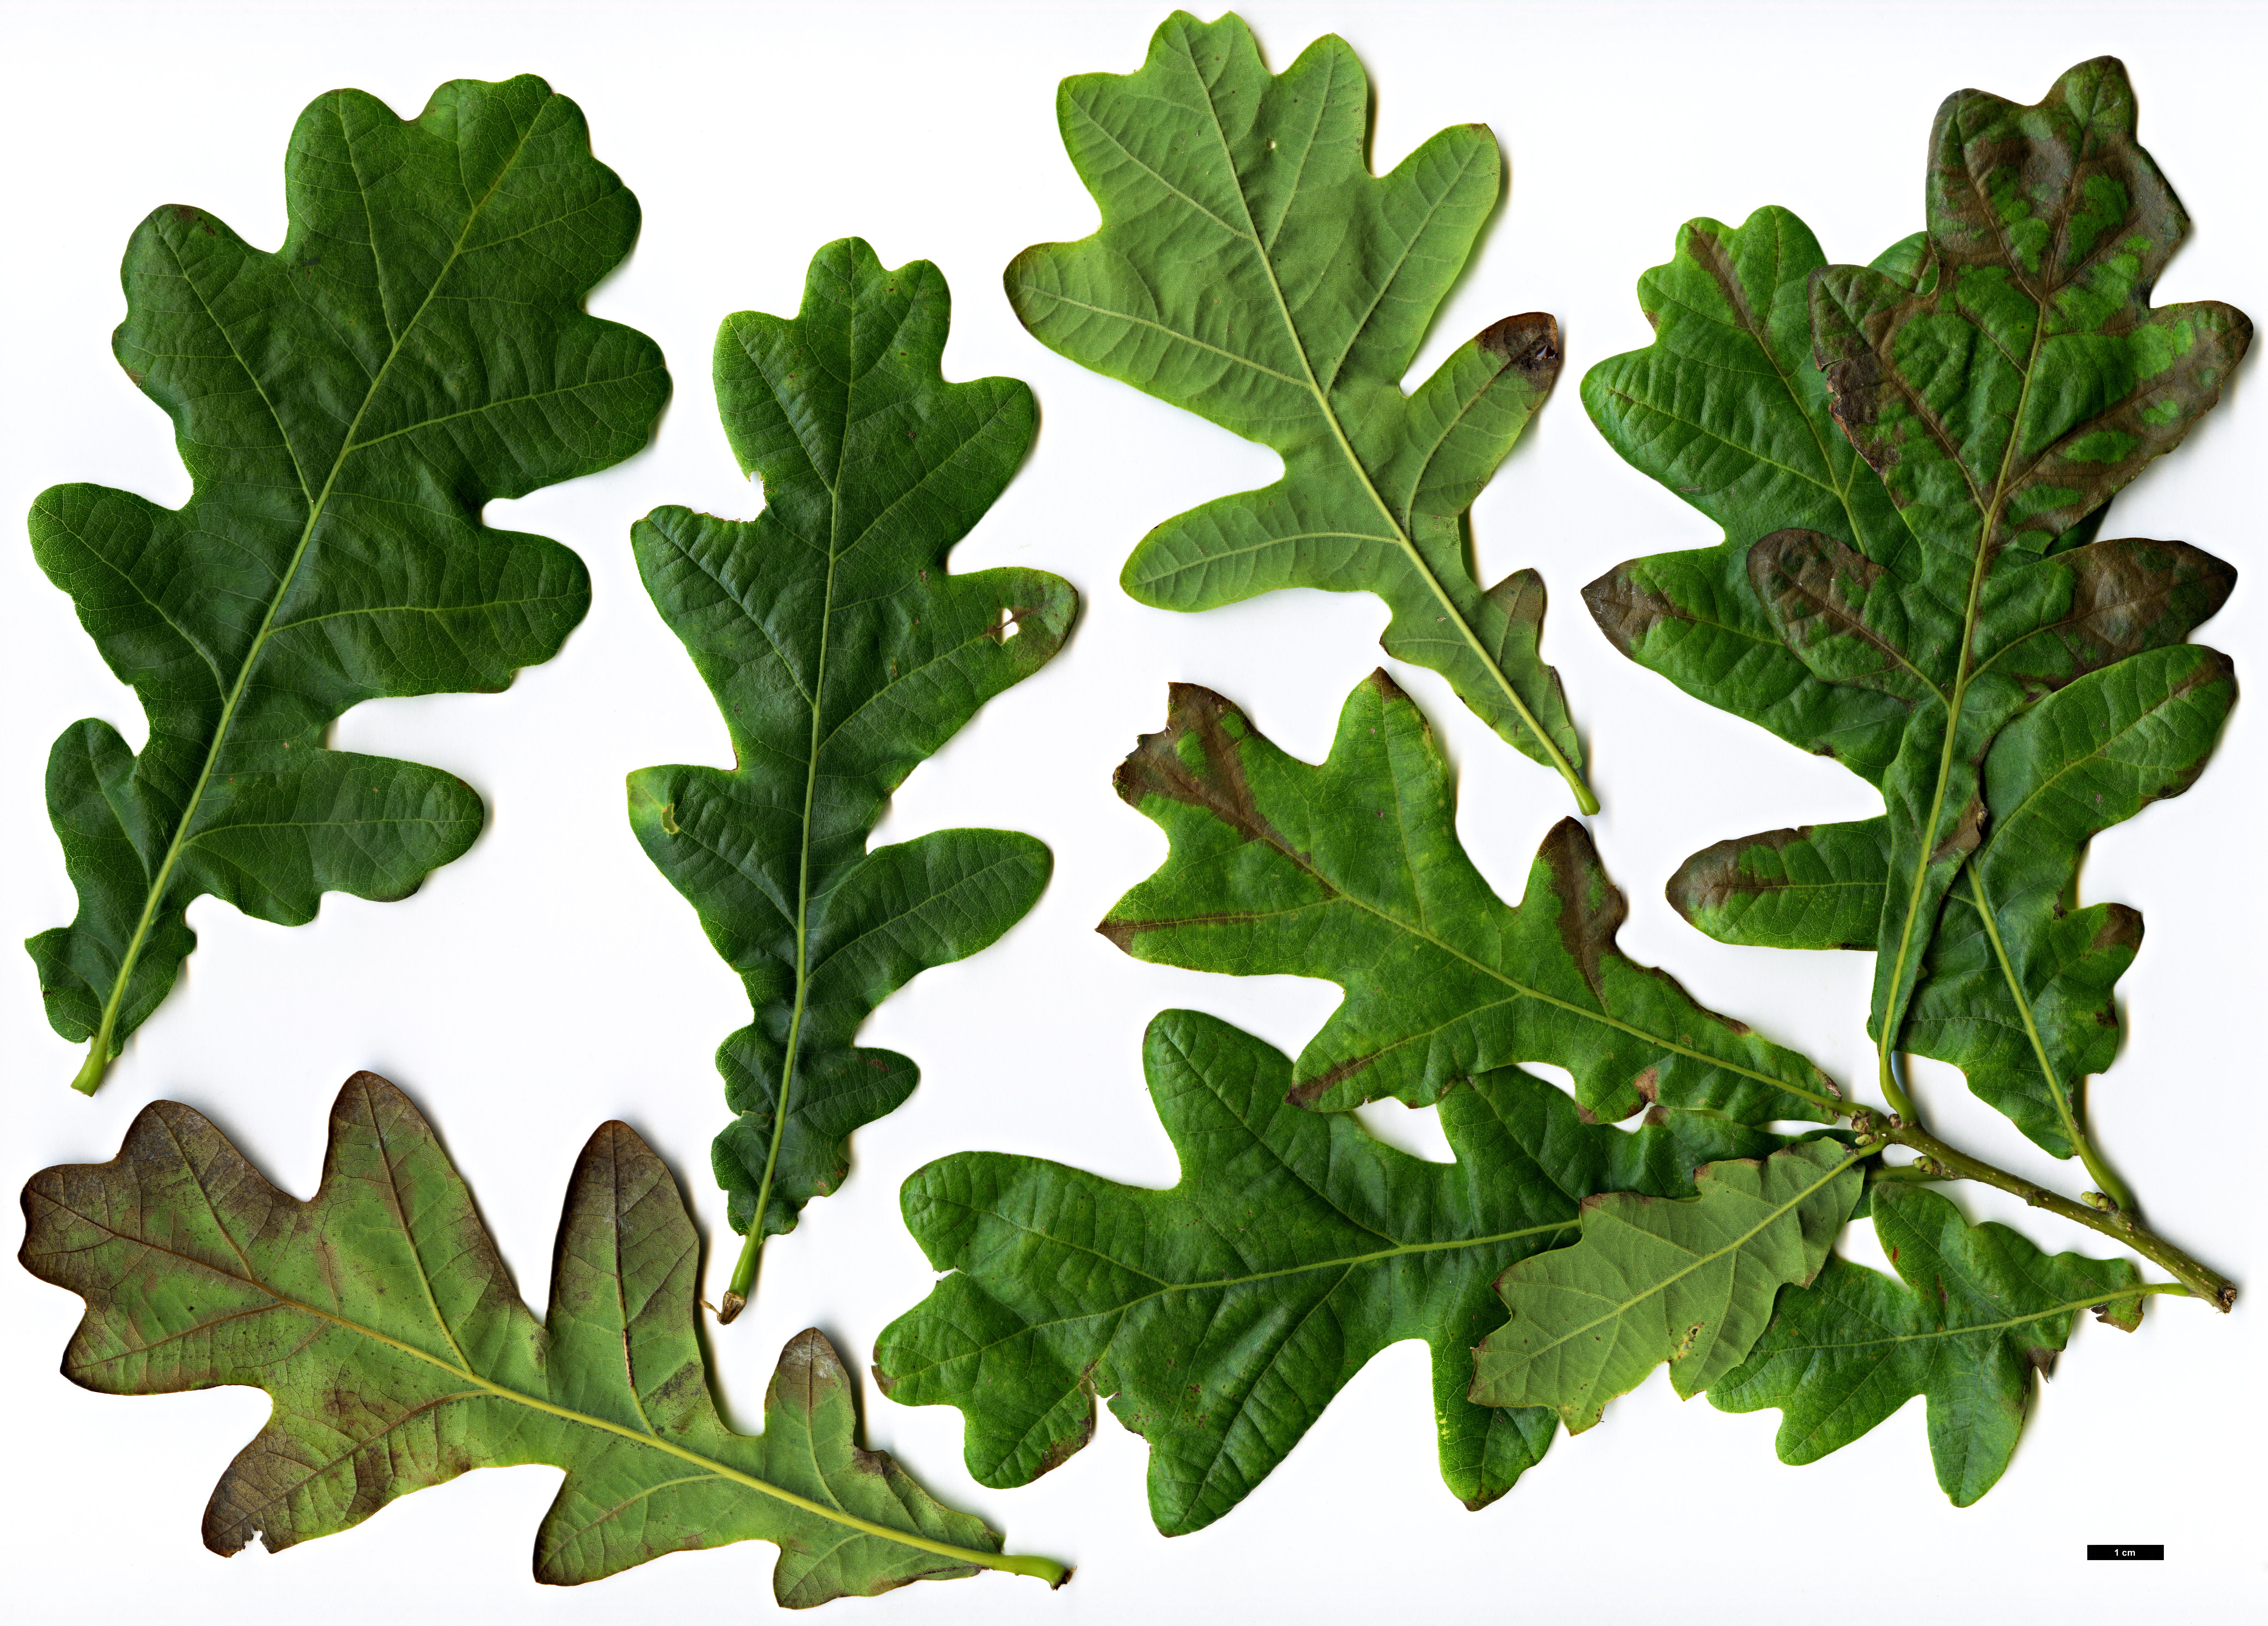 High resolution image: Family: Fagaceae - Genus: Quercus - Taxon: robur - SpeciesSub: subsp. pedunculiflora 'Çankiri'